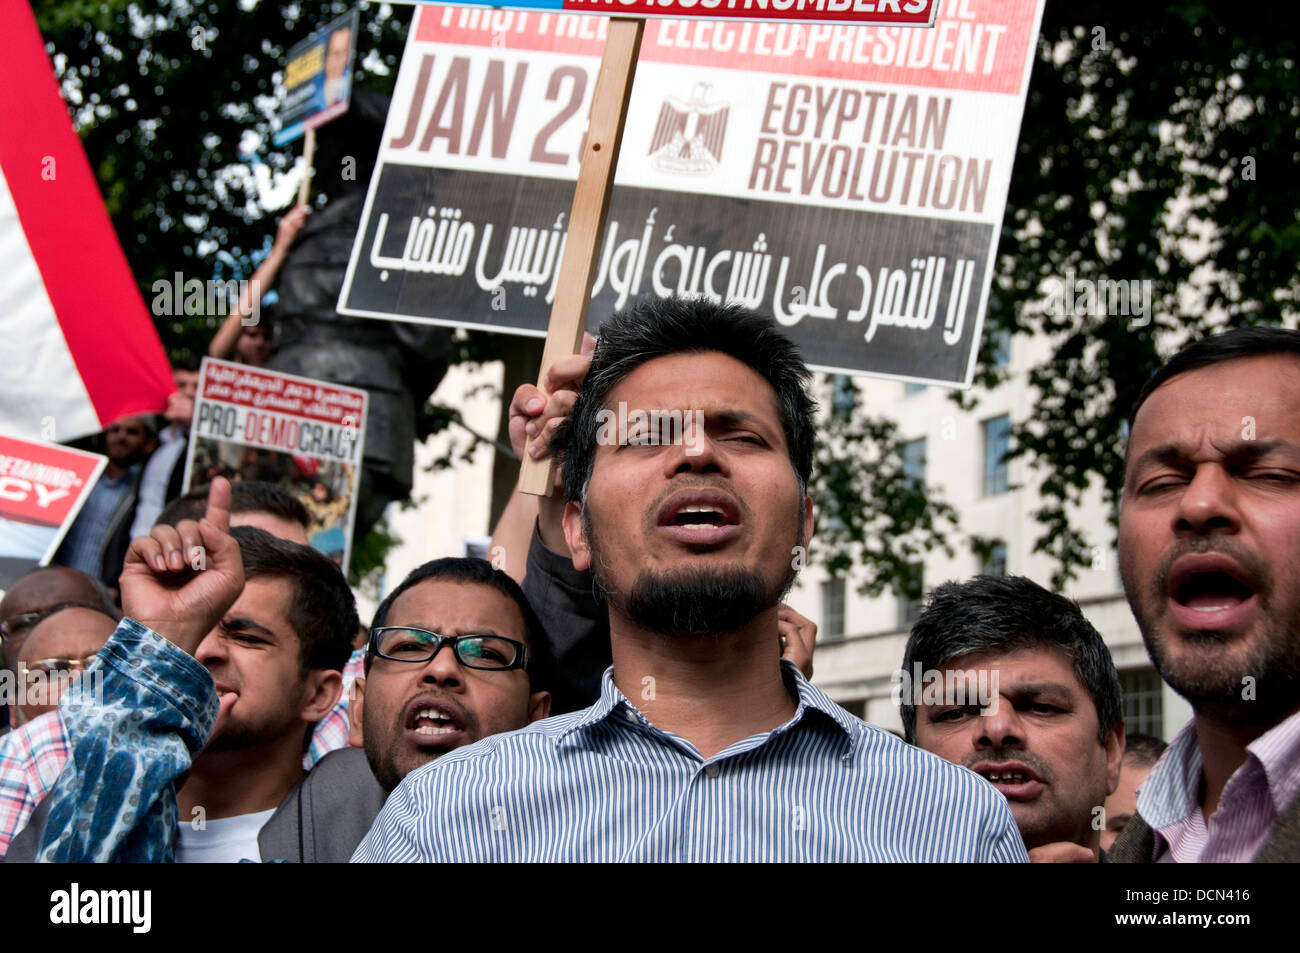 La Confrérie égyptienne et des partisans de Morsi protester à Londres contre Sisi & prise de coup d'armée ( ) en Egypte. Août 2013 Banque D'Images